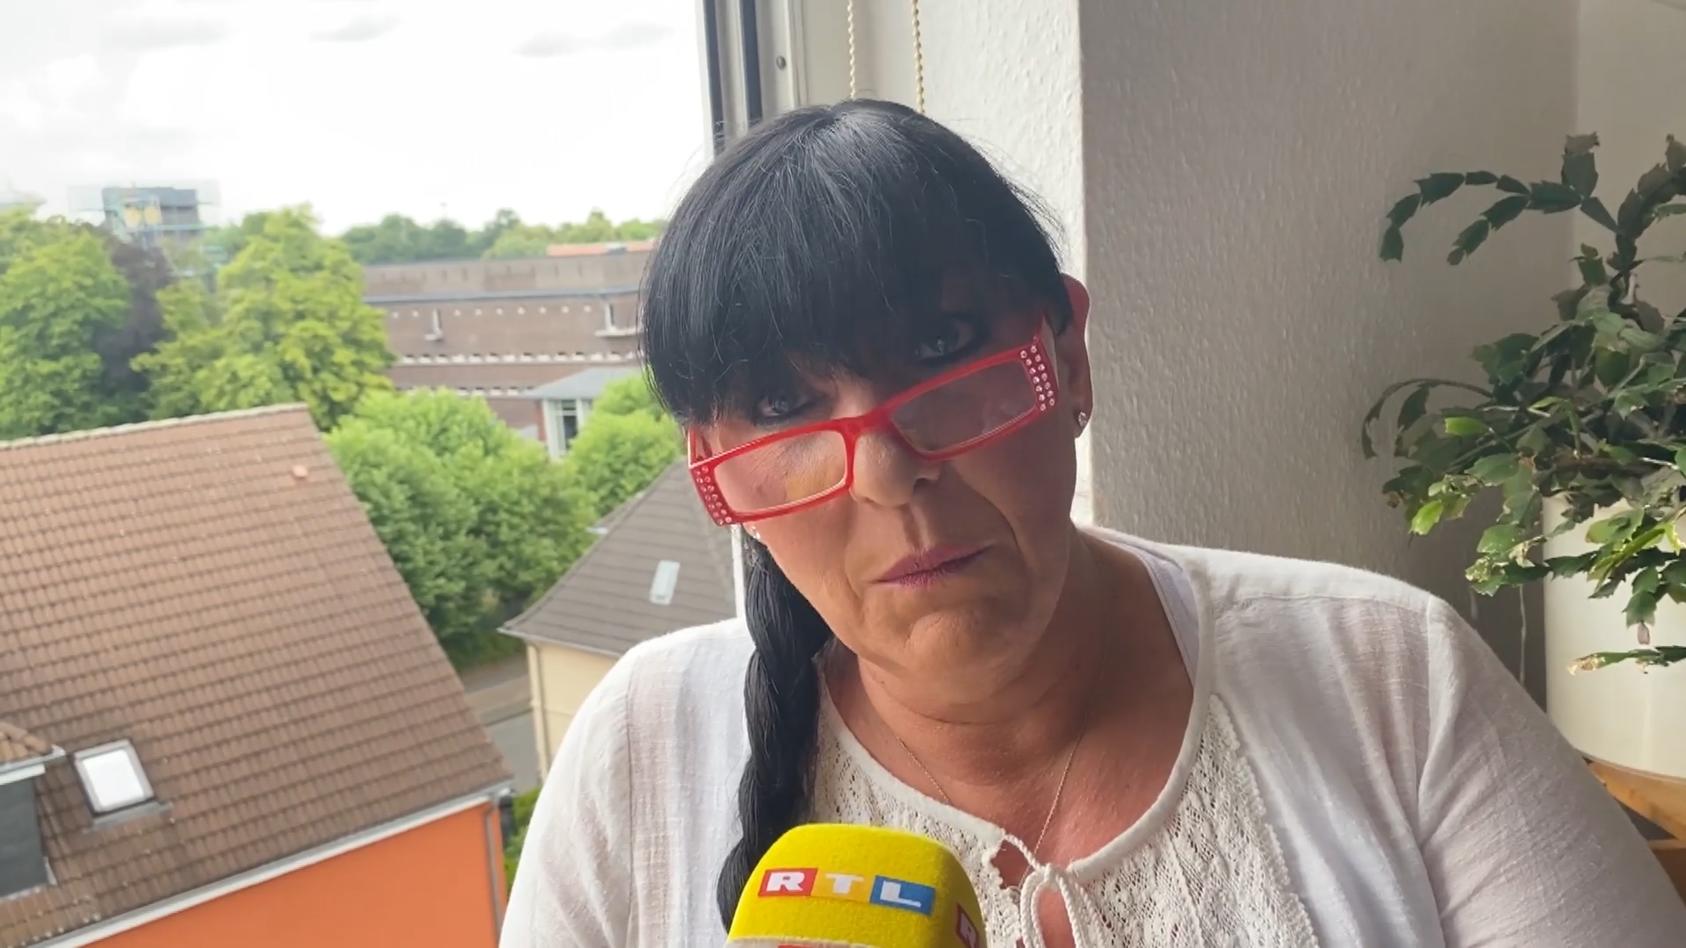 Anwohnerin macht sich Sorgen um ihre Gesundheit Explosion in Leverkusen